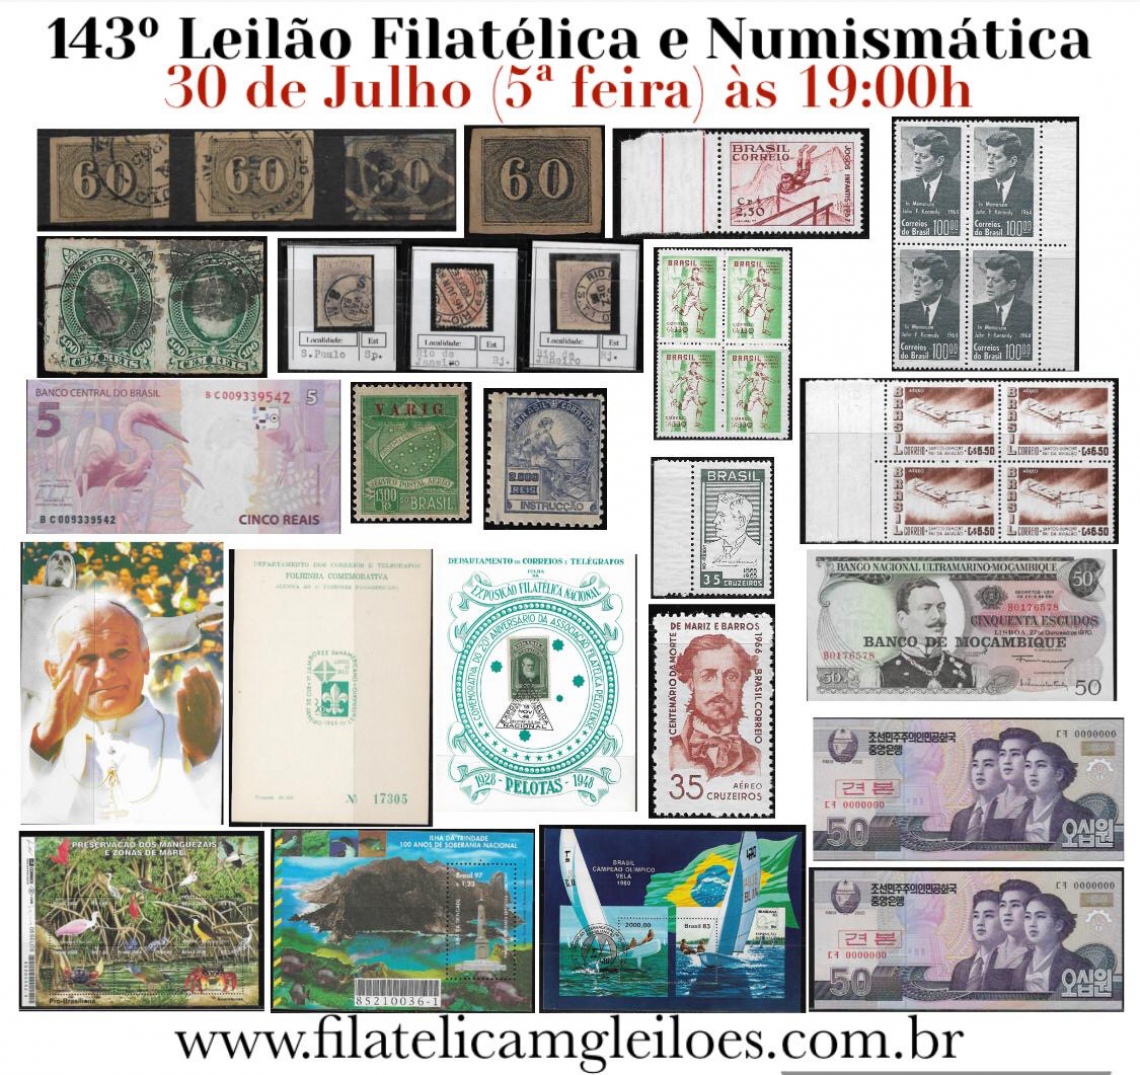 143º Leilão de Filatelia e Numismática